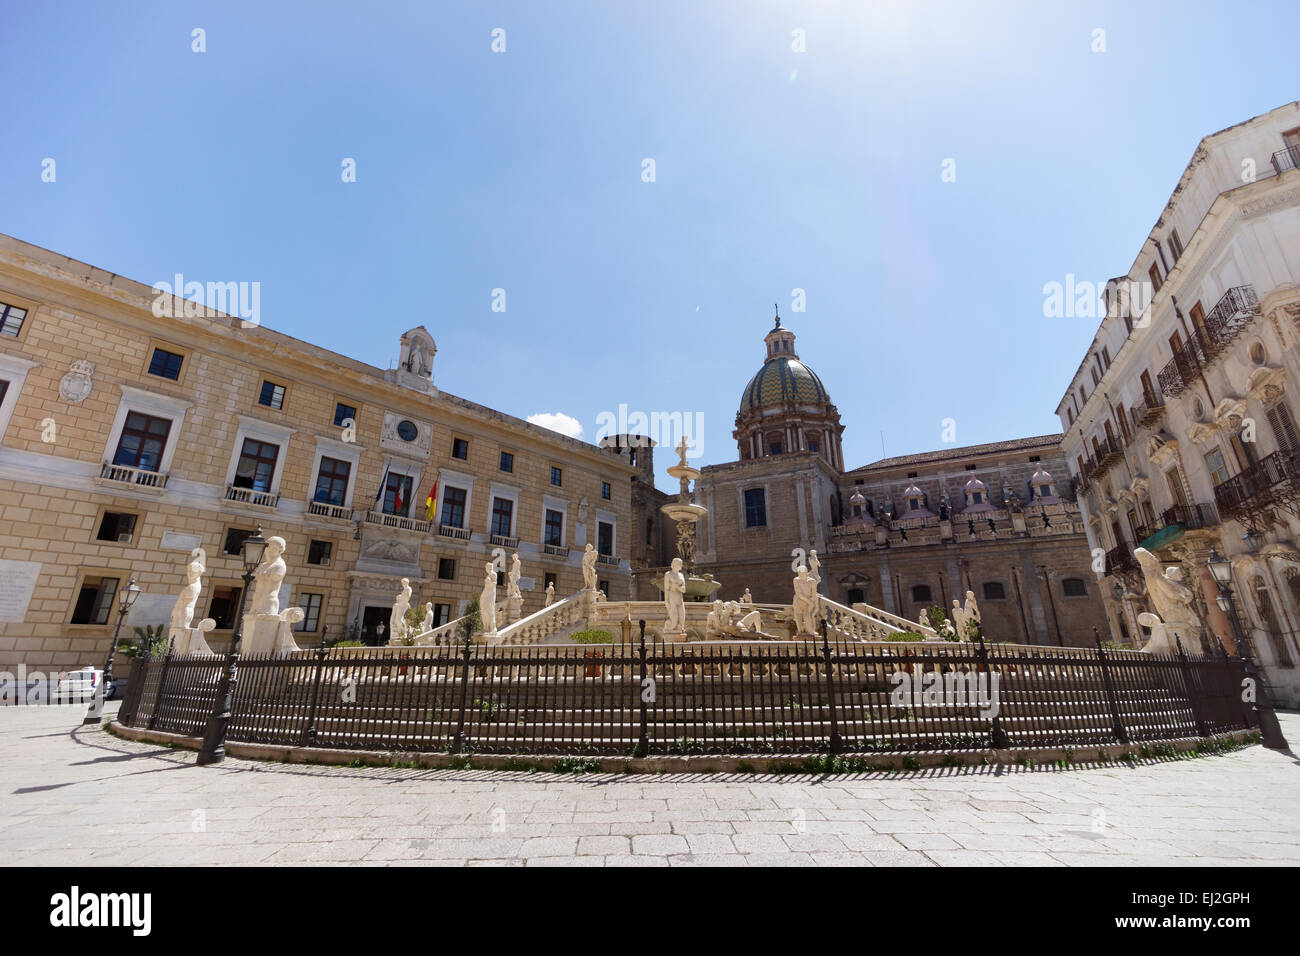 Die Fontana Pretoria im Herzen von Palermo, Sizilien. Stockfoto